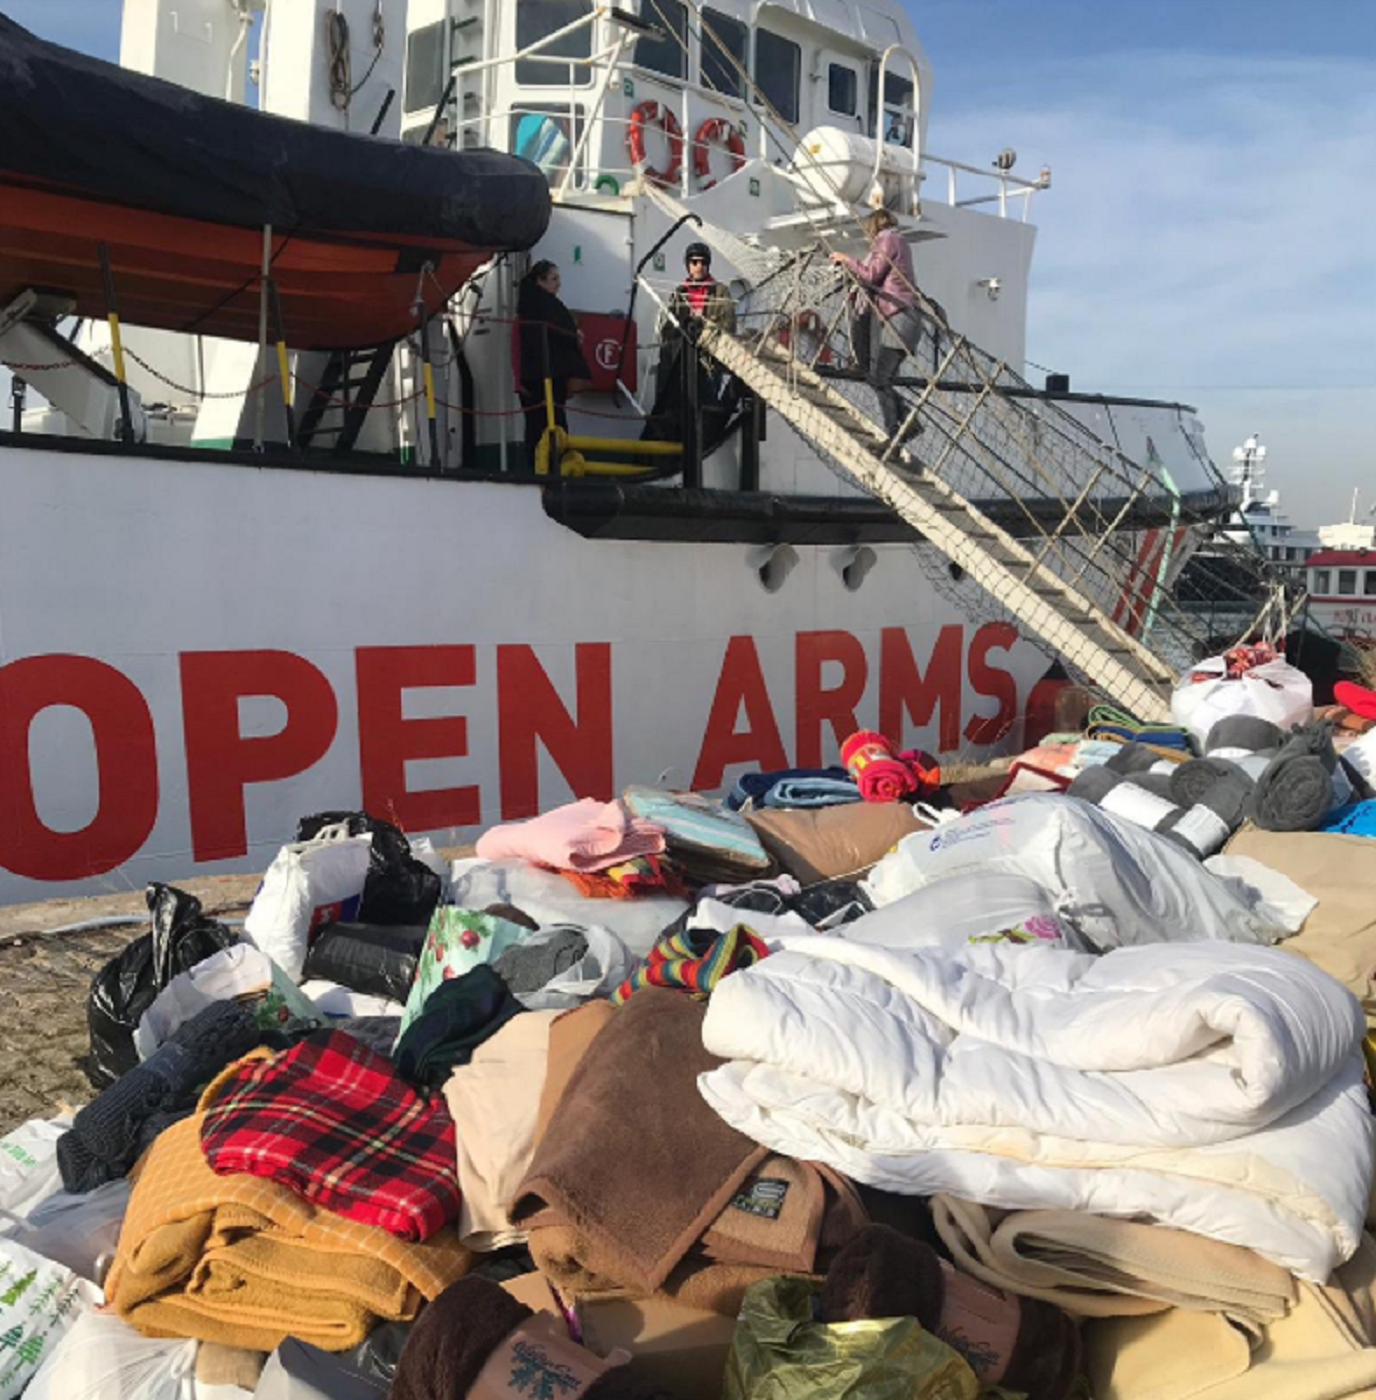 Open Arms rep més de 3.000 mantes per persones rescatades en un allau de solidaritat